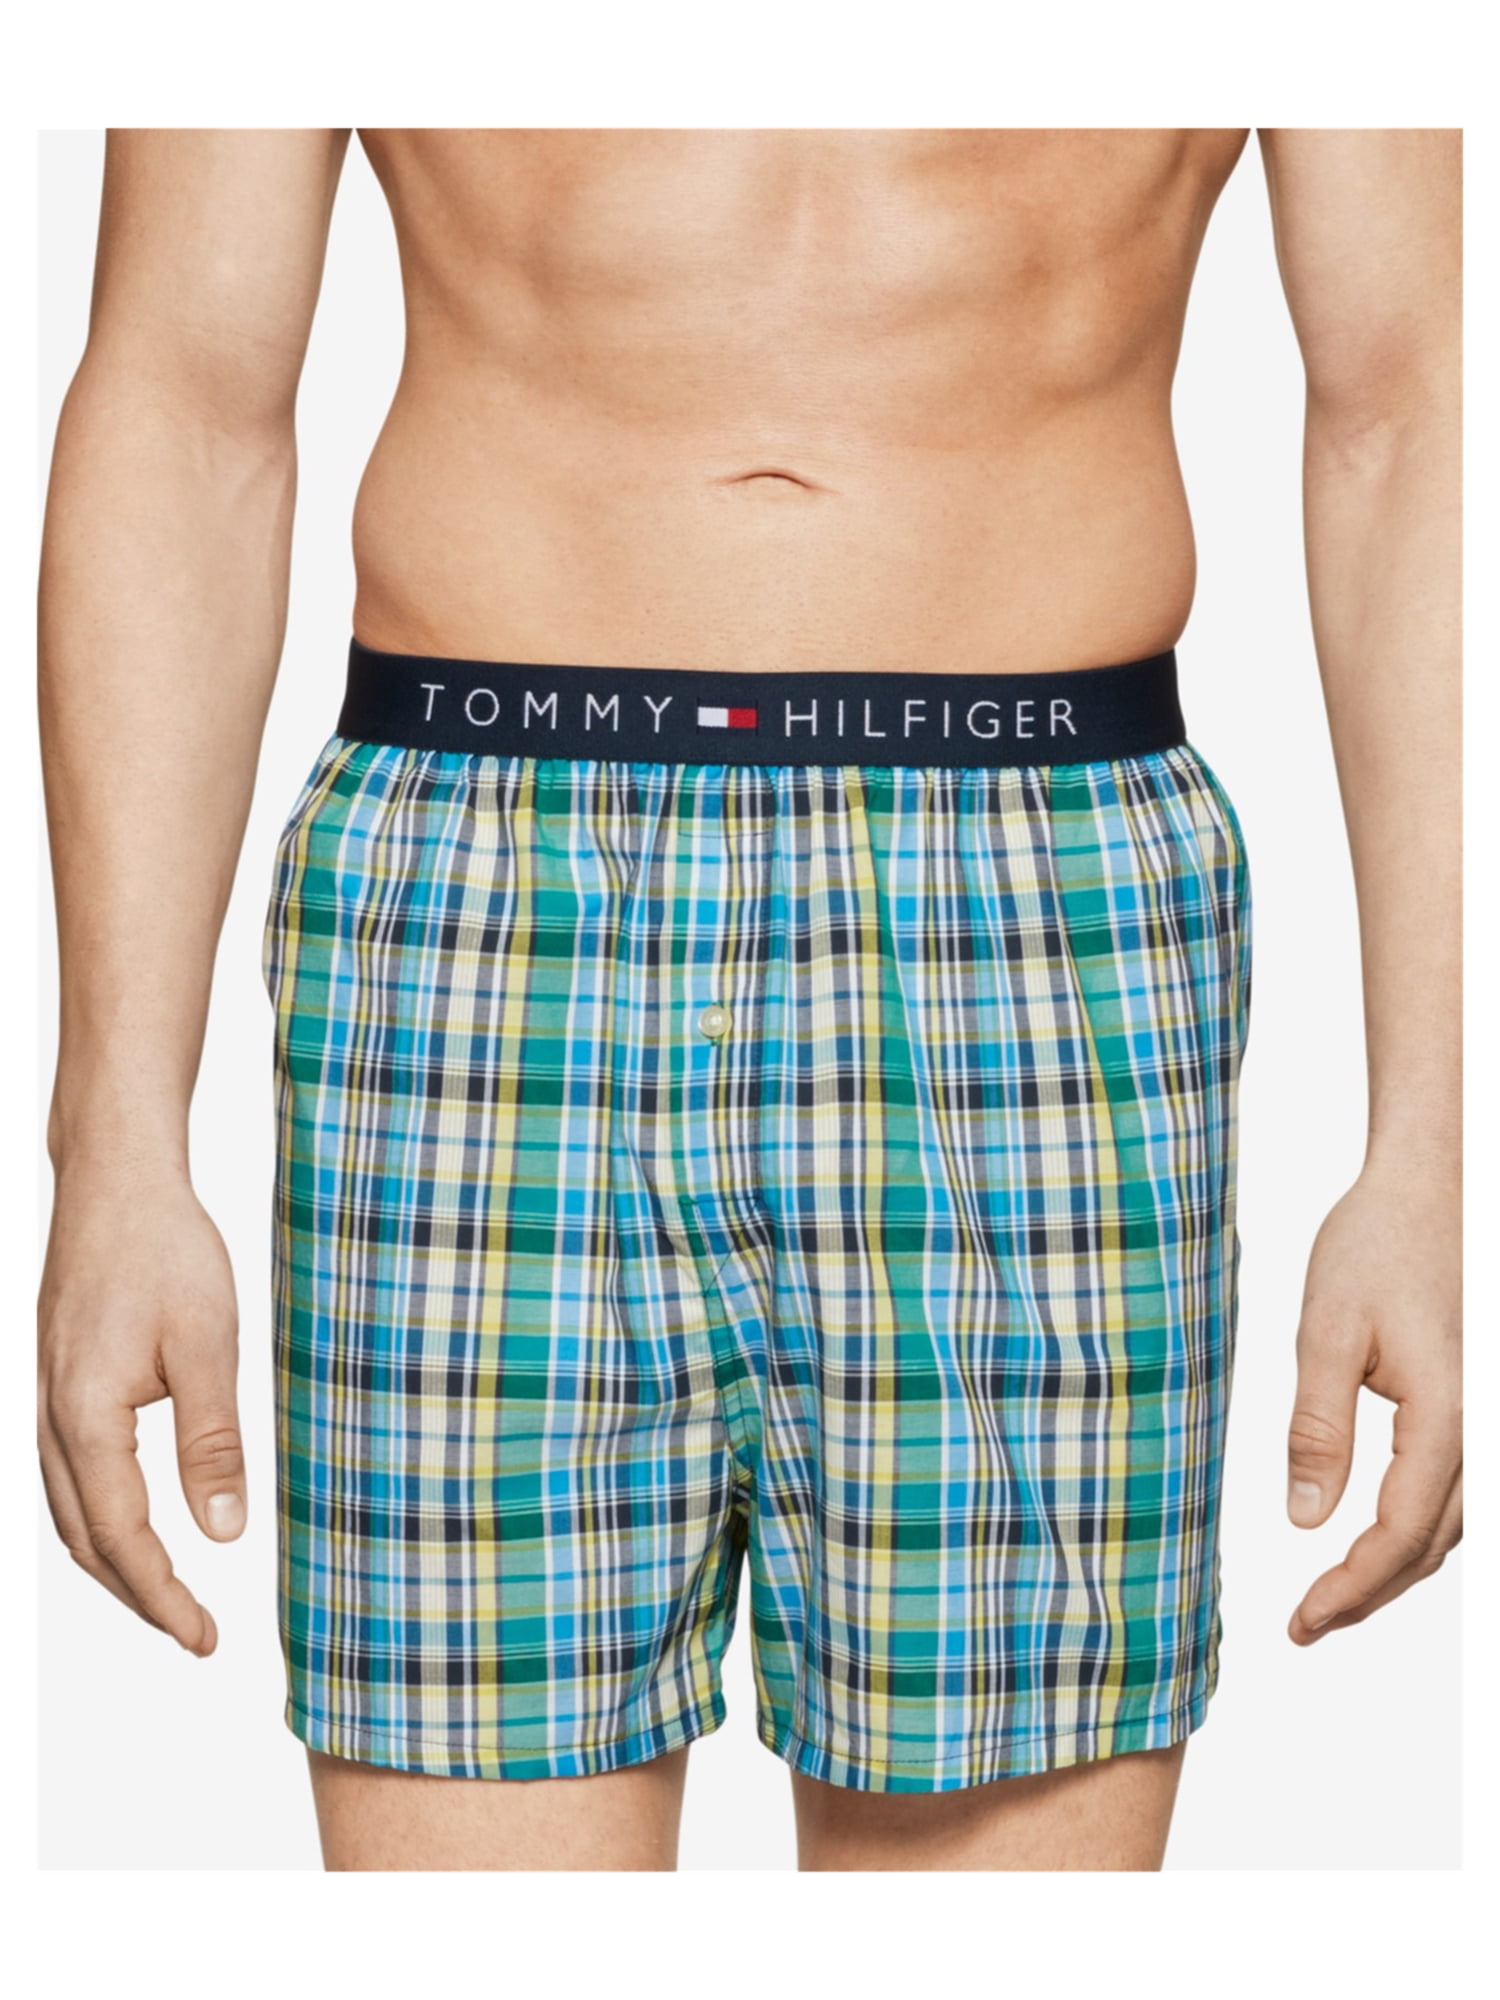 Tommy Hilfiger - Tommy Hilfiger Mens Hanging Underwear Boxers - Walmart ...